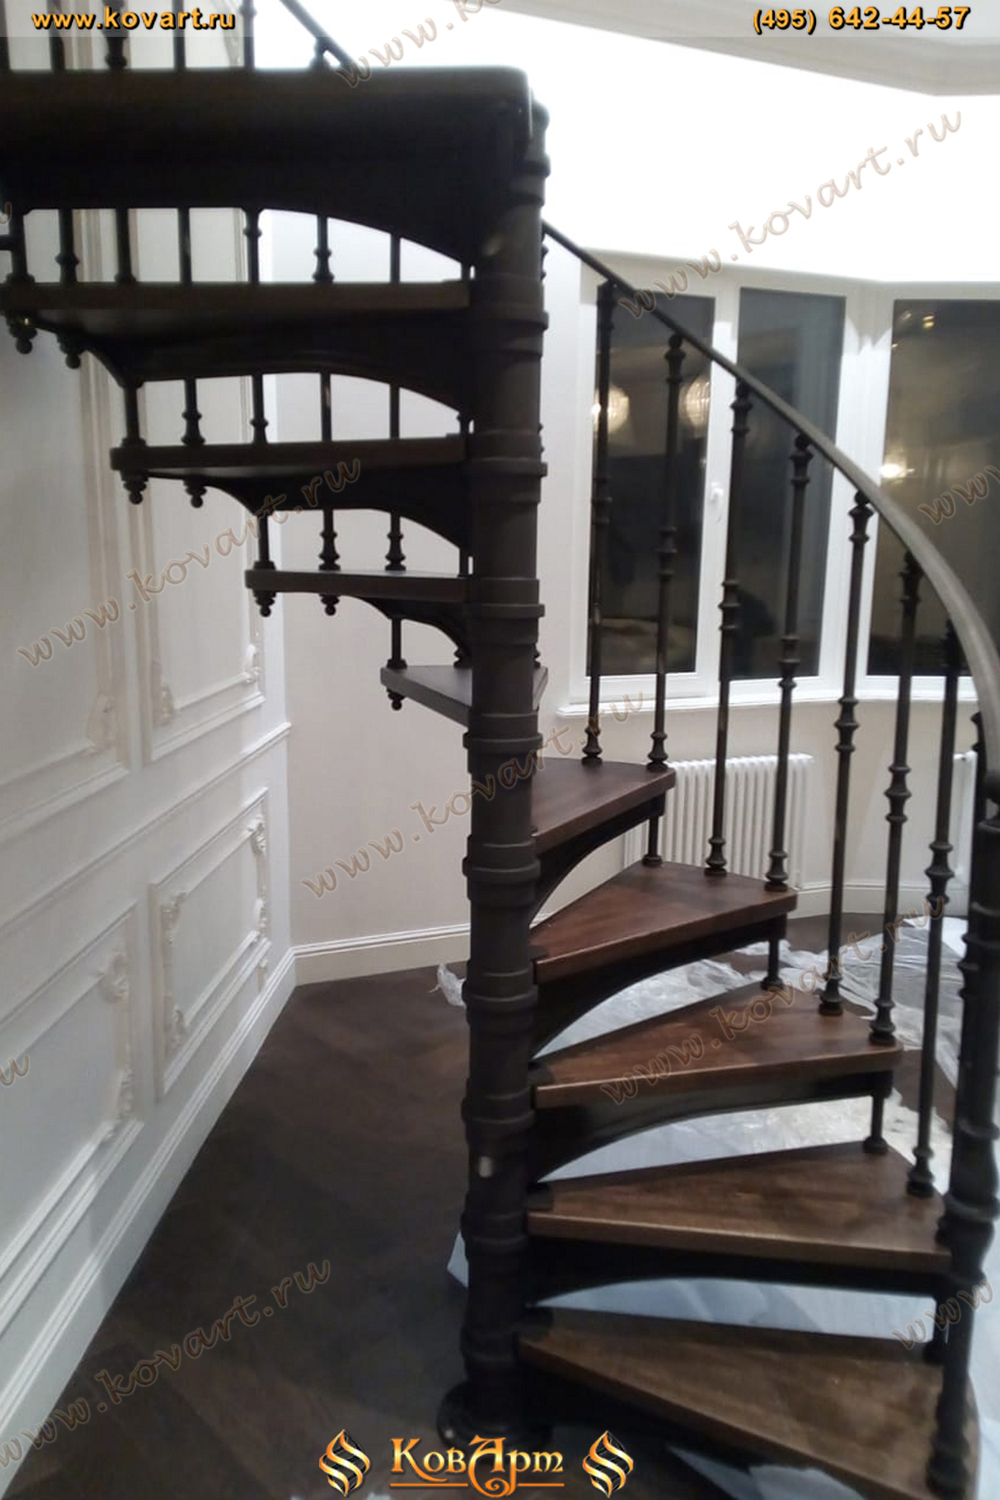 Кованая винтовая лестница с деревянными ступенями Код: ЛП-012/70